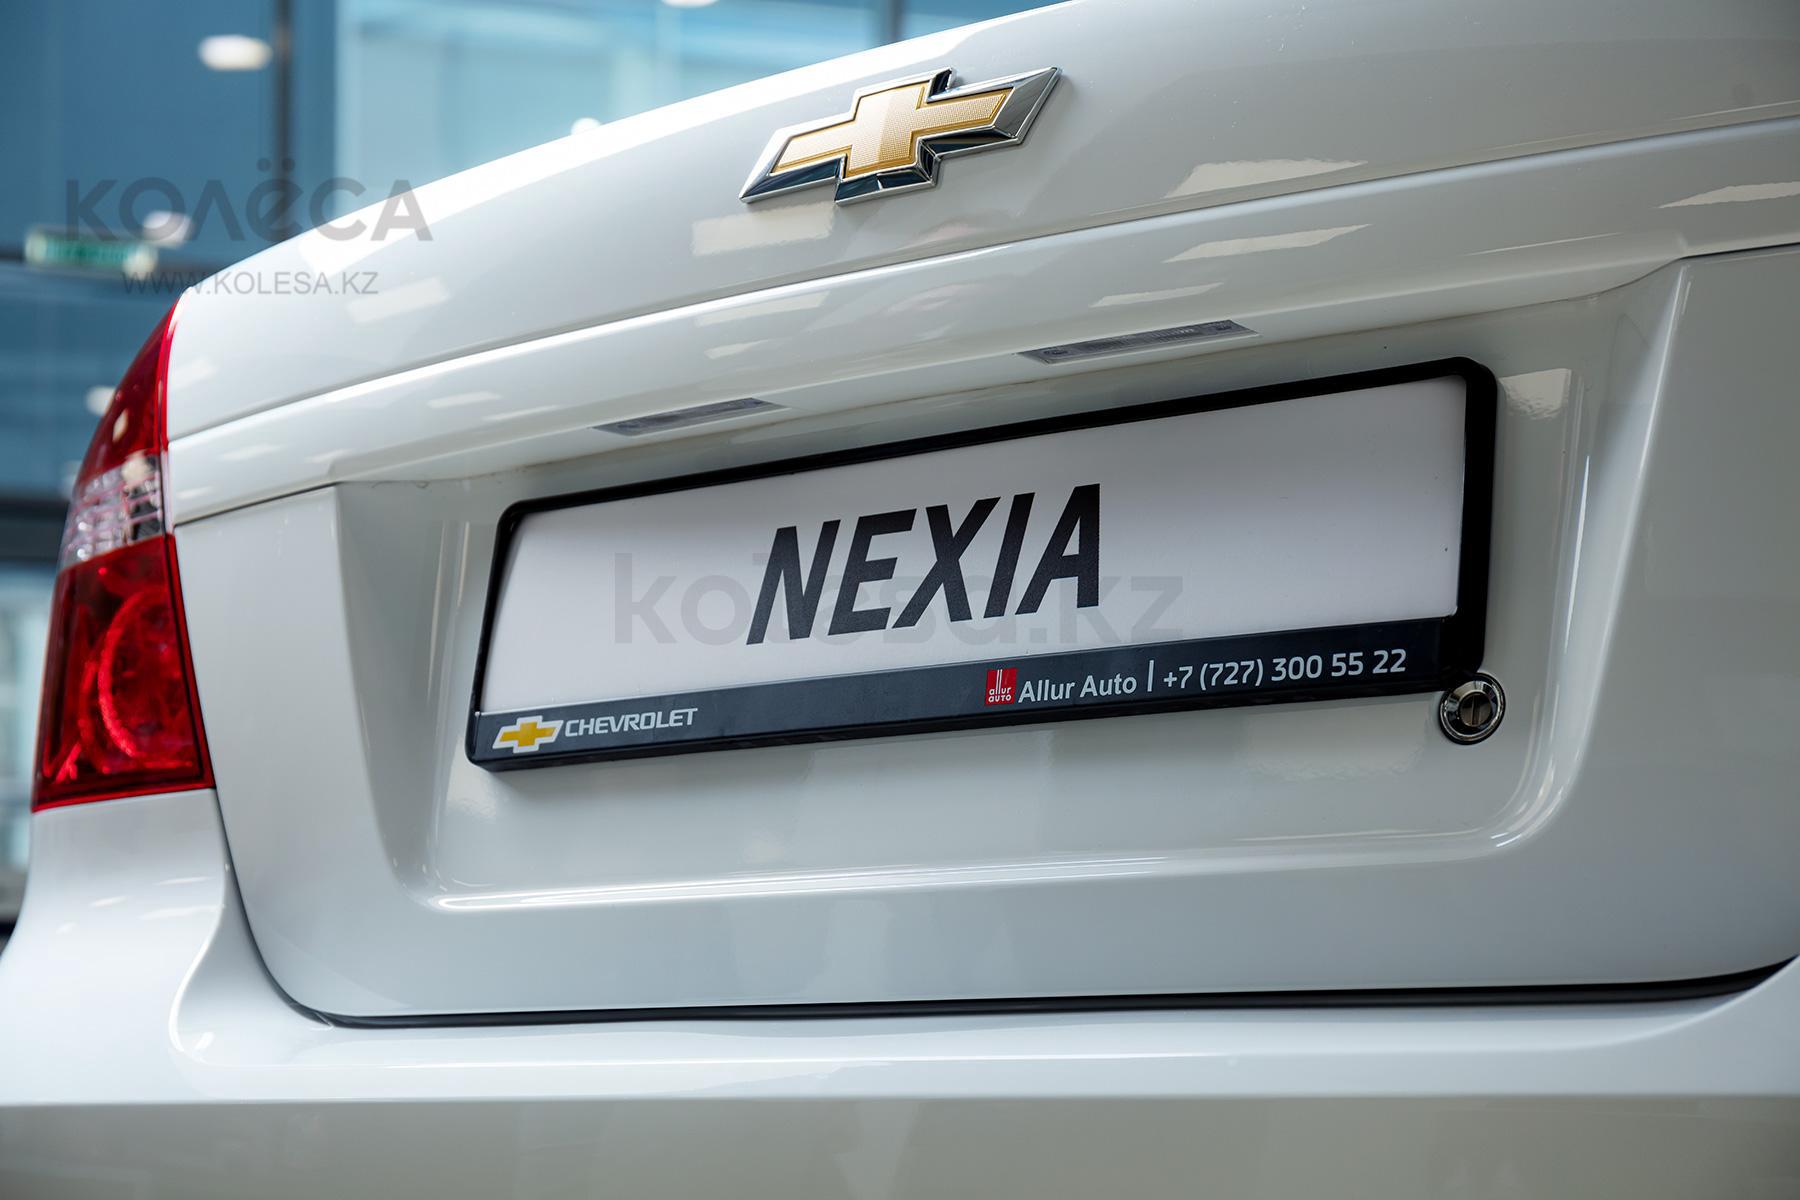 Chevrolet Nexia B класса 2020-2021 года